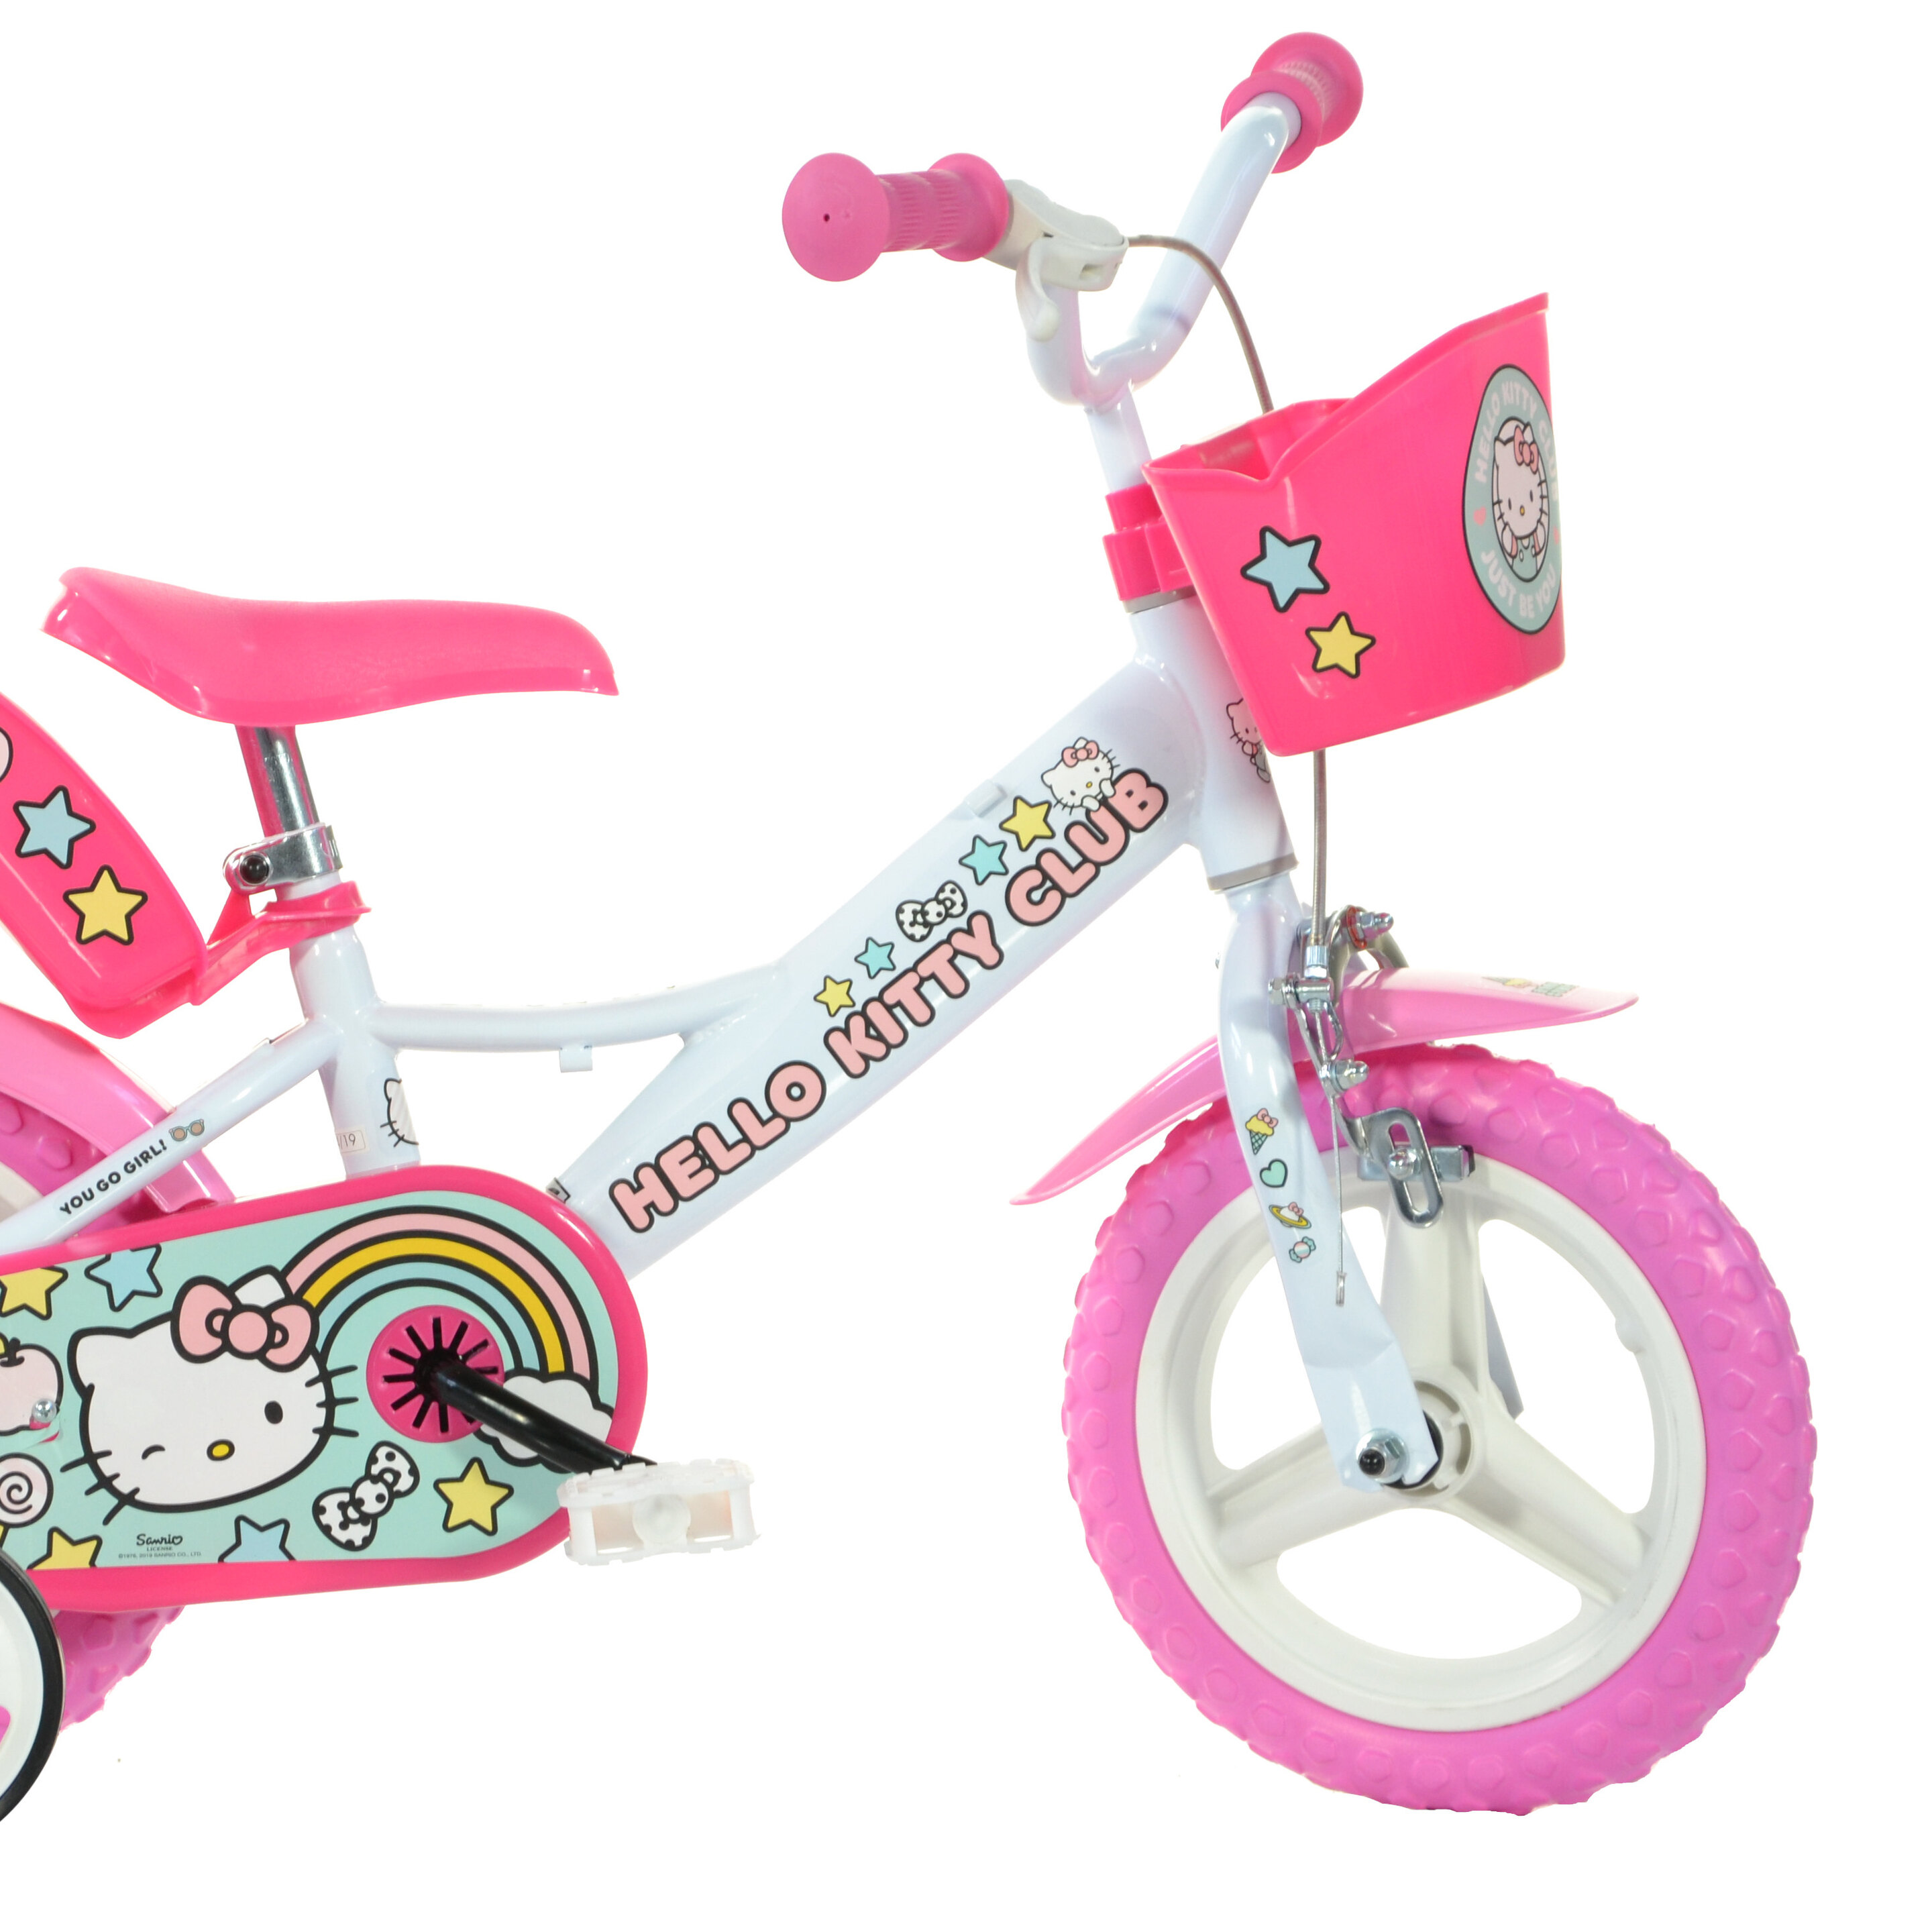 Bicicleta Infantil Hello Kitty 12 Pulgadas